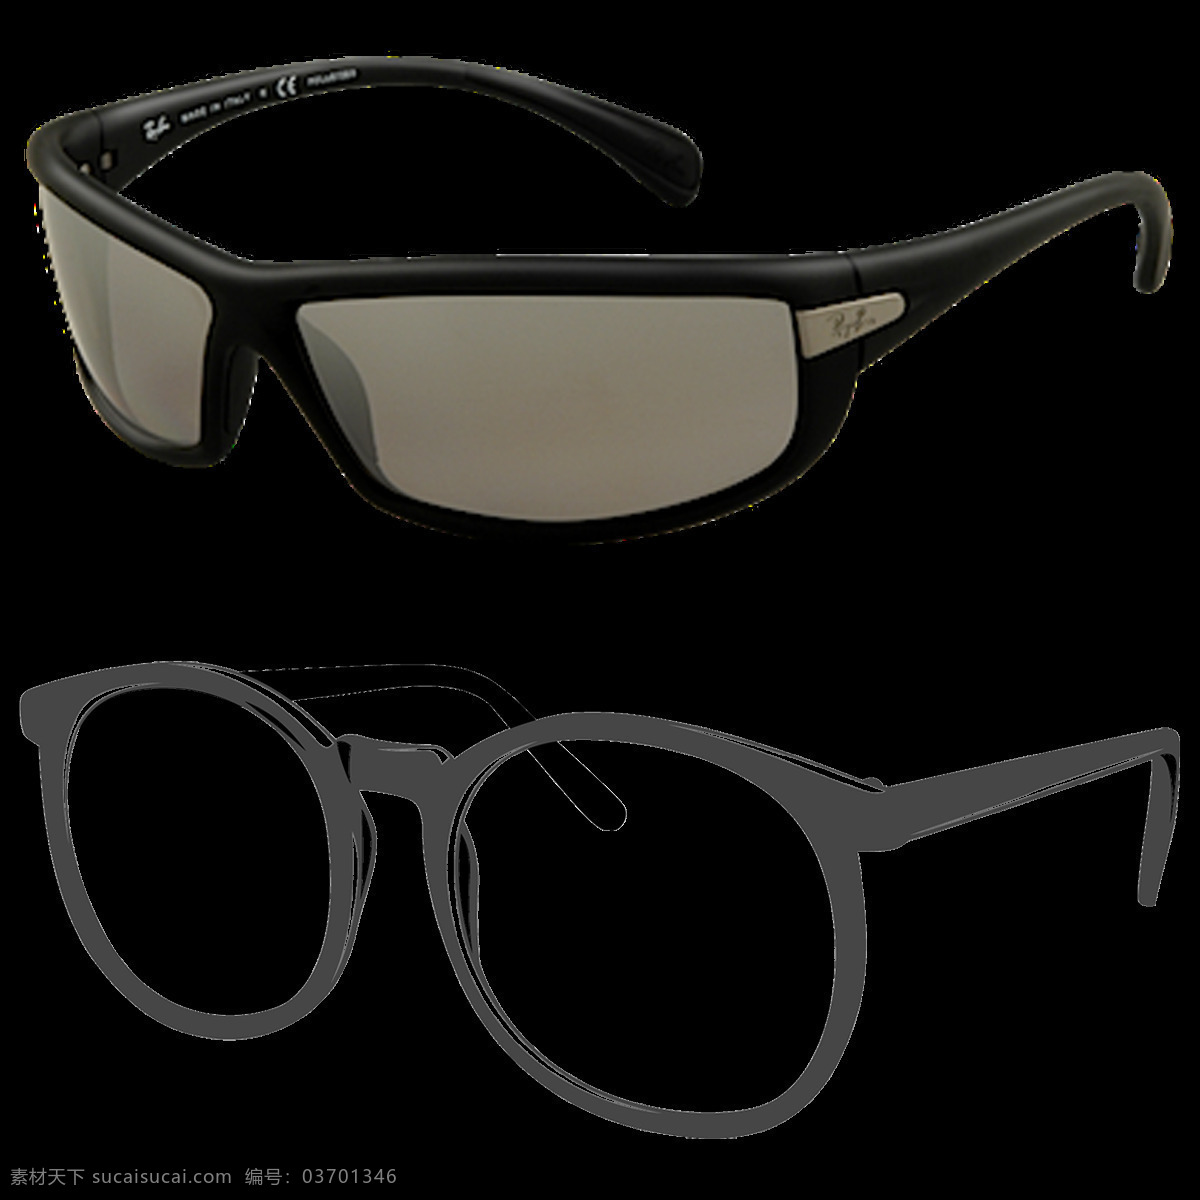 两 只 眼镜 免 抠 透明 图 层 卡通眼镜图片 创意眼镜图片 眼镜图片大全 唯美 时尚 眼镜广告图片 墨镜图片 太阳镜图片 近视眼镜 眼镜海报 卡通眼镜 黑框眼镜